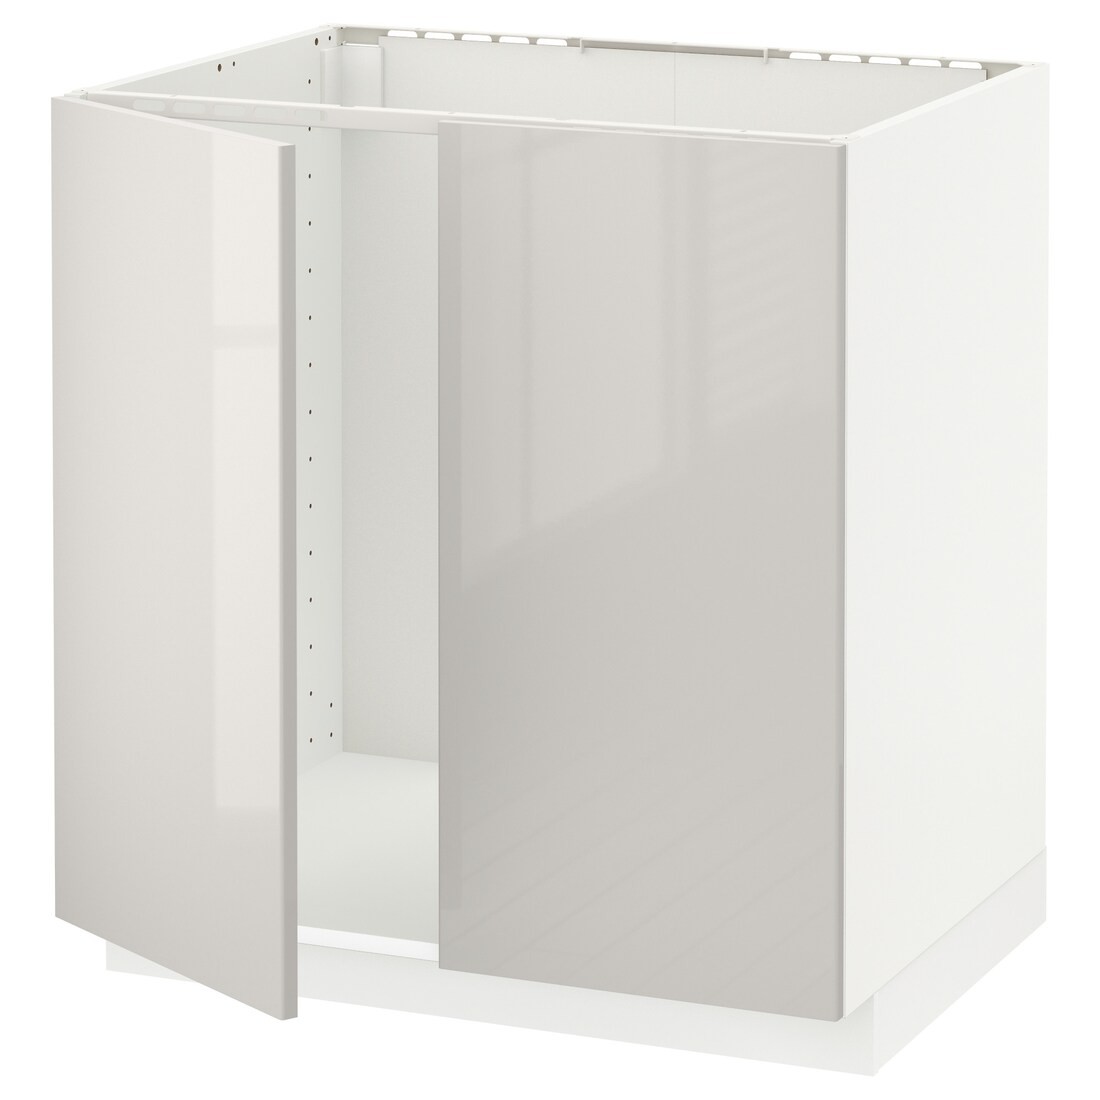 IKEA METOD МЕТОД Напольный шкаф для мойки, белый / Ringhult светло-серый, 80x60 см 49459935 | 494.599.35